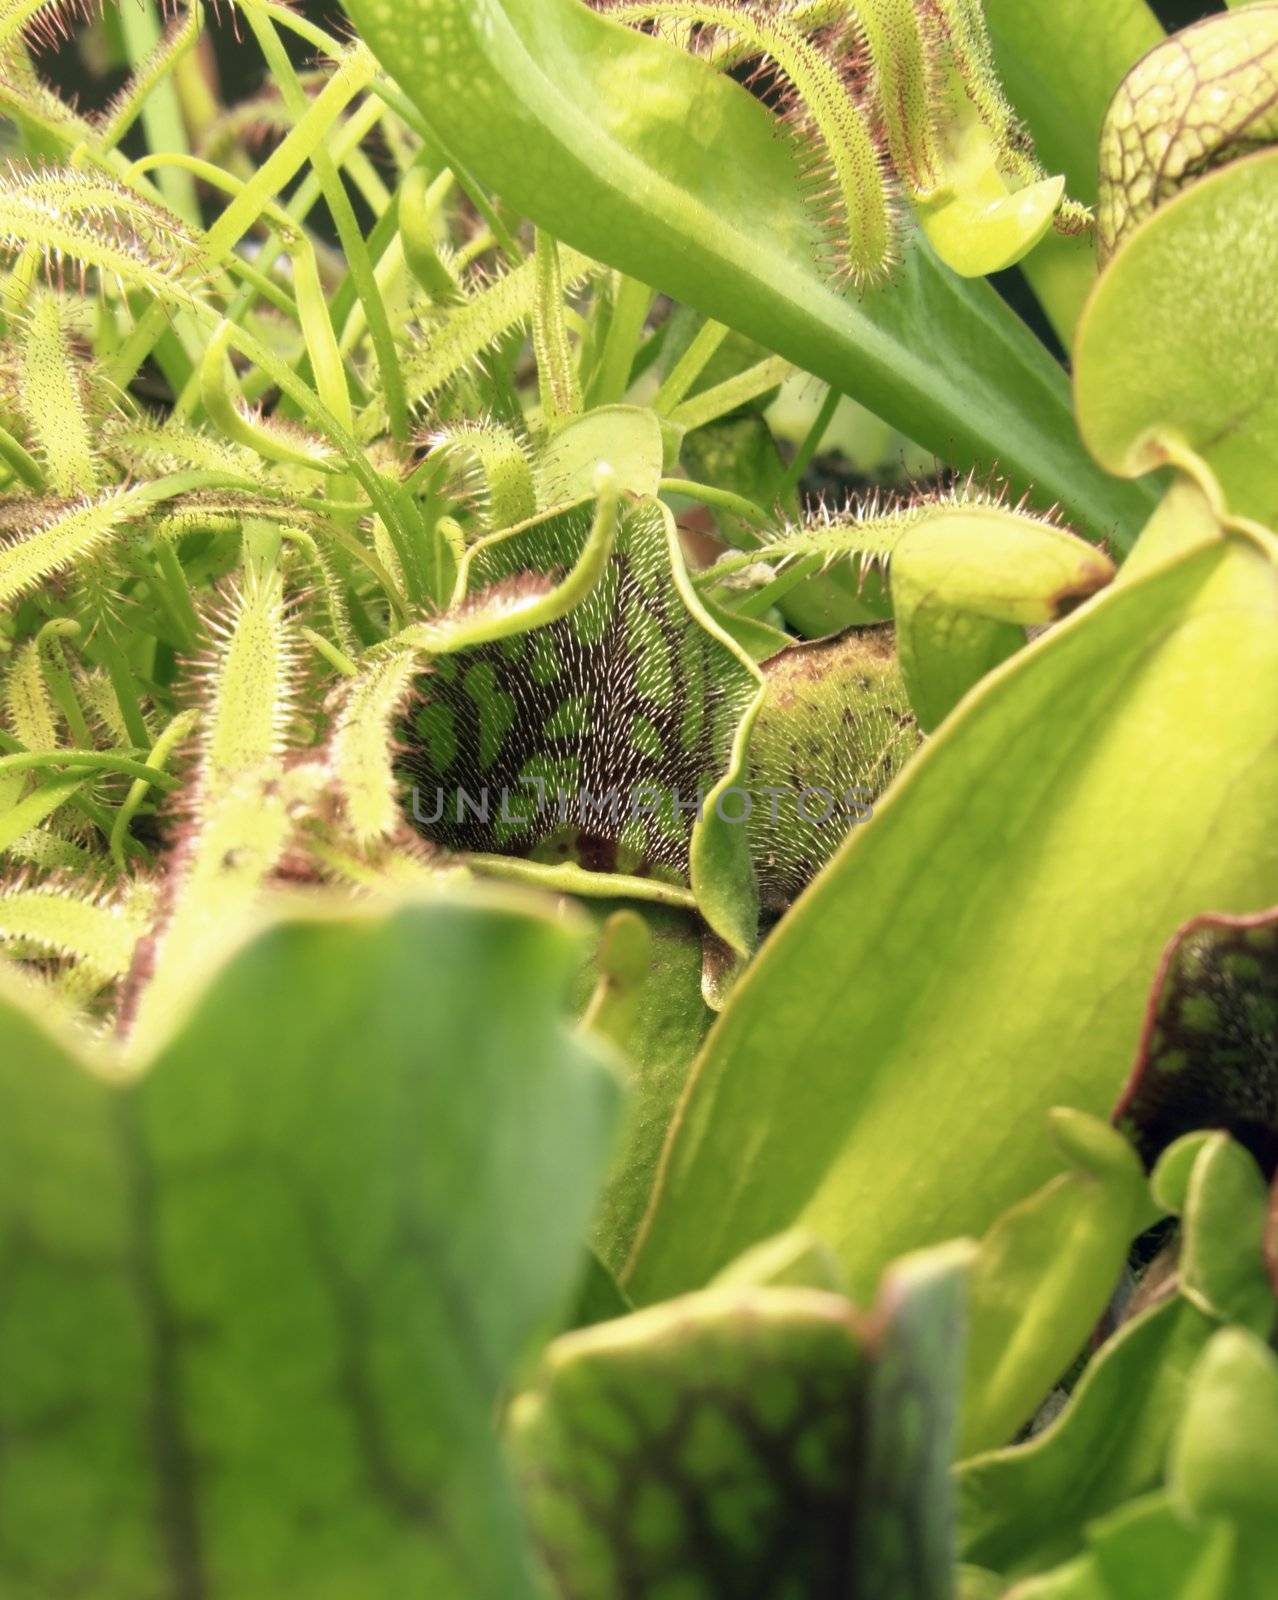 carnivorous plants by gewoldi